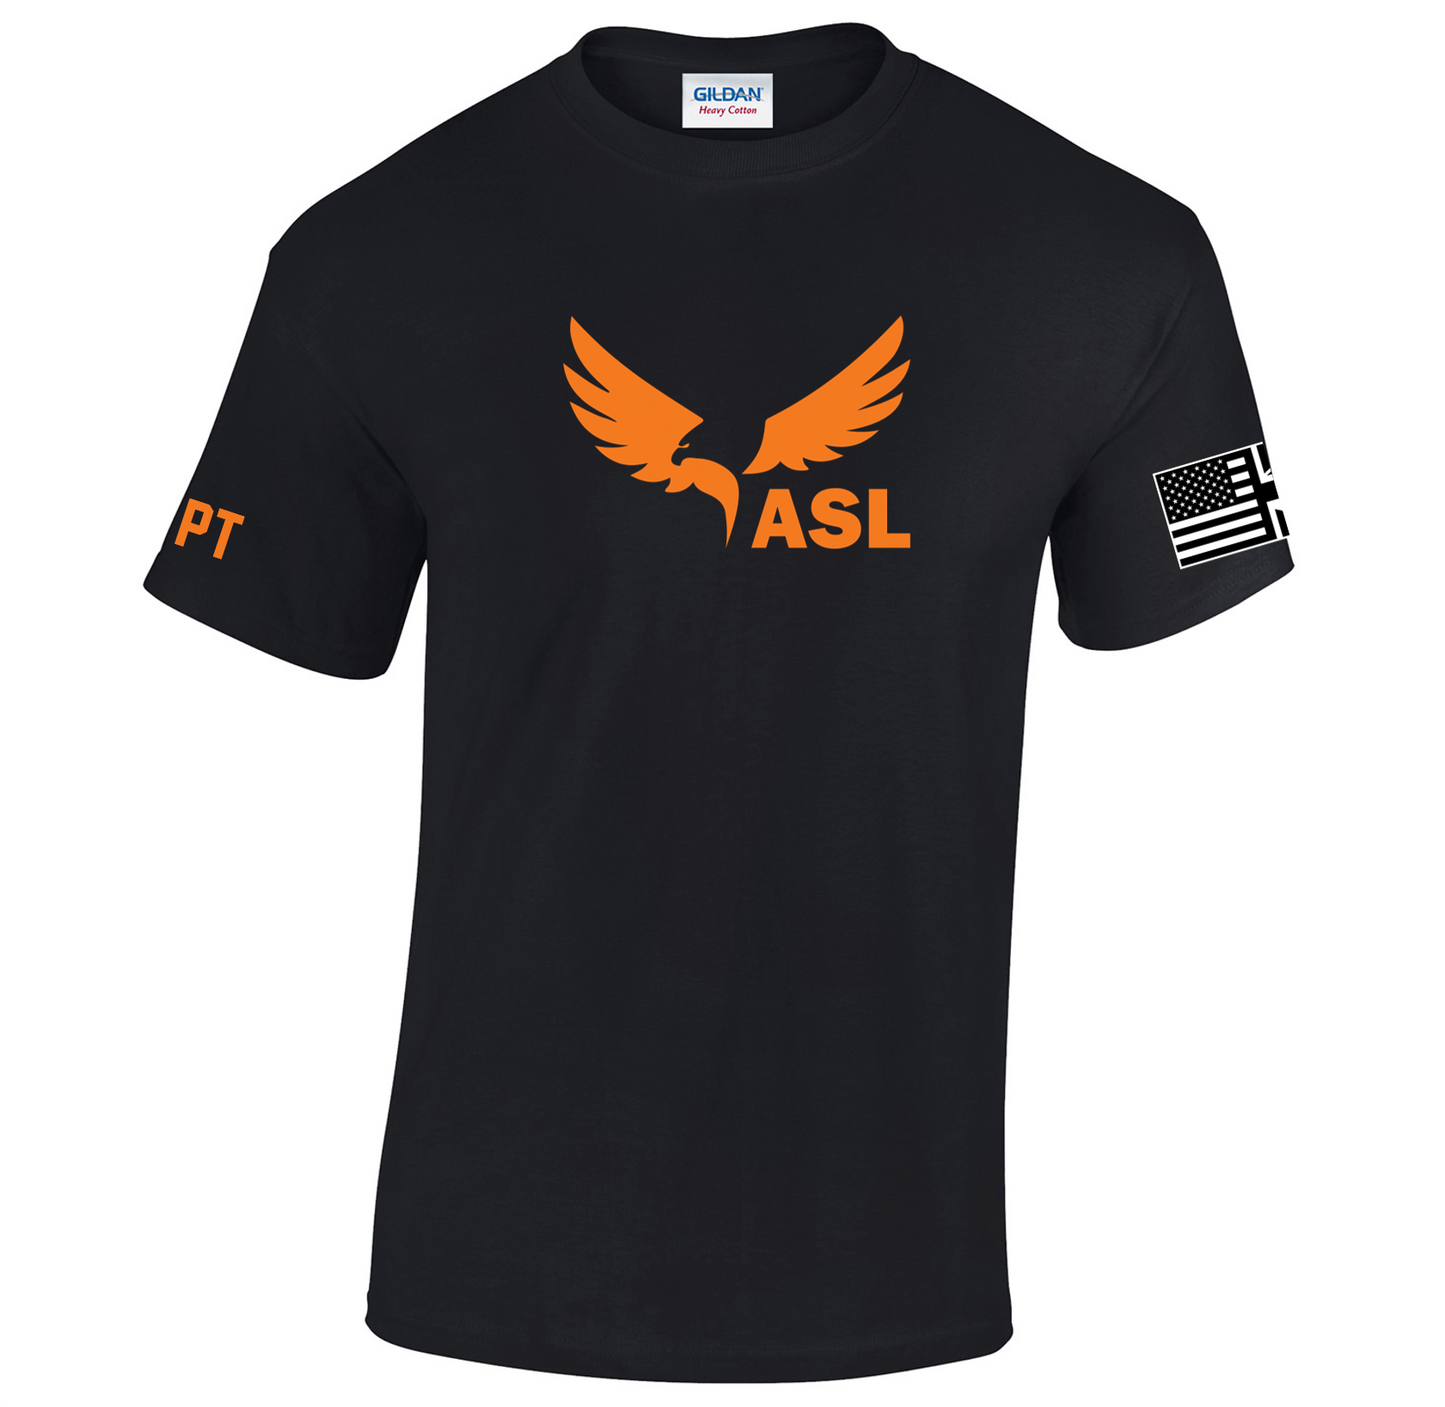 ASL Volleyball Tech Tee - Main Logo